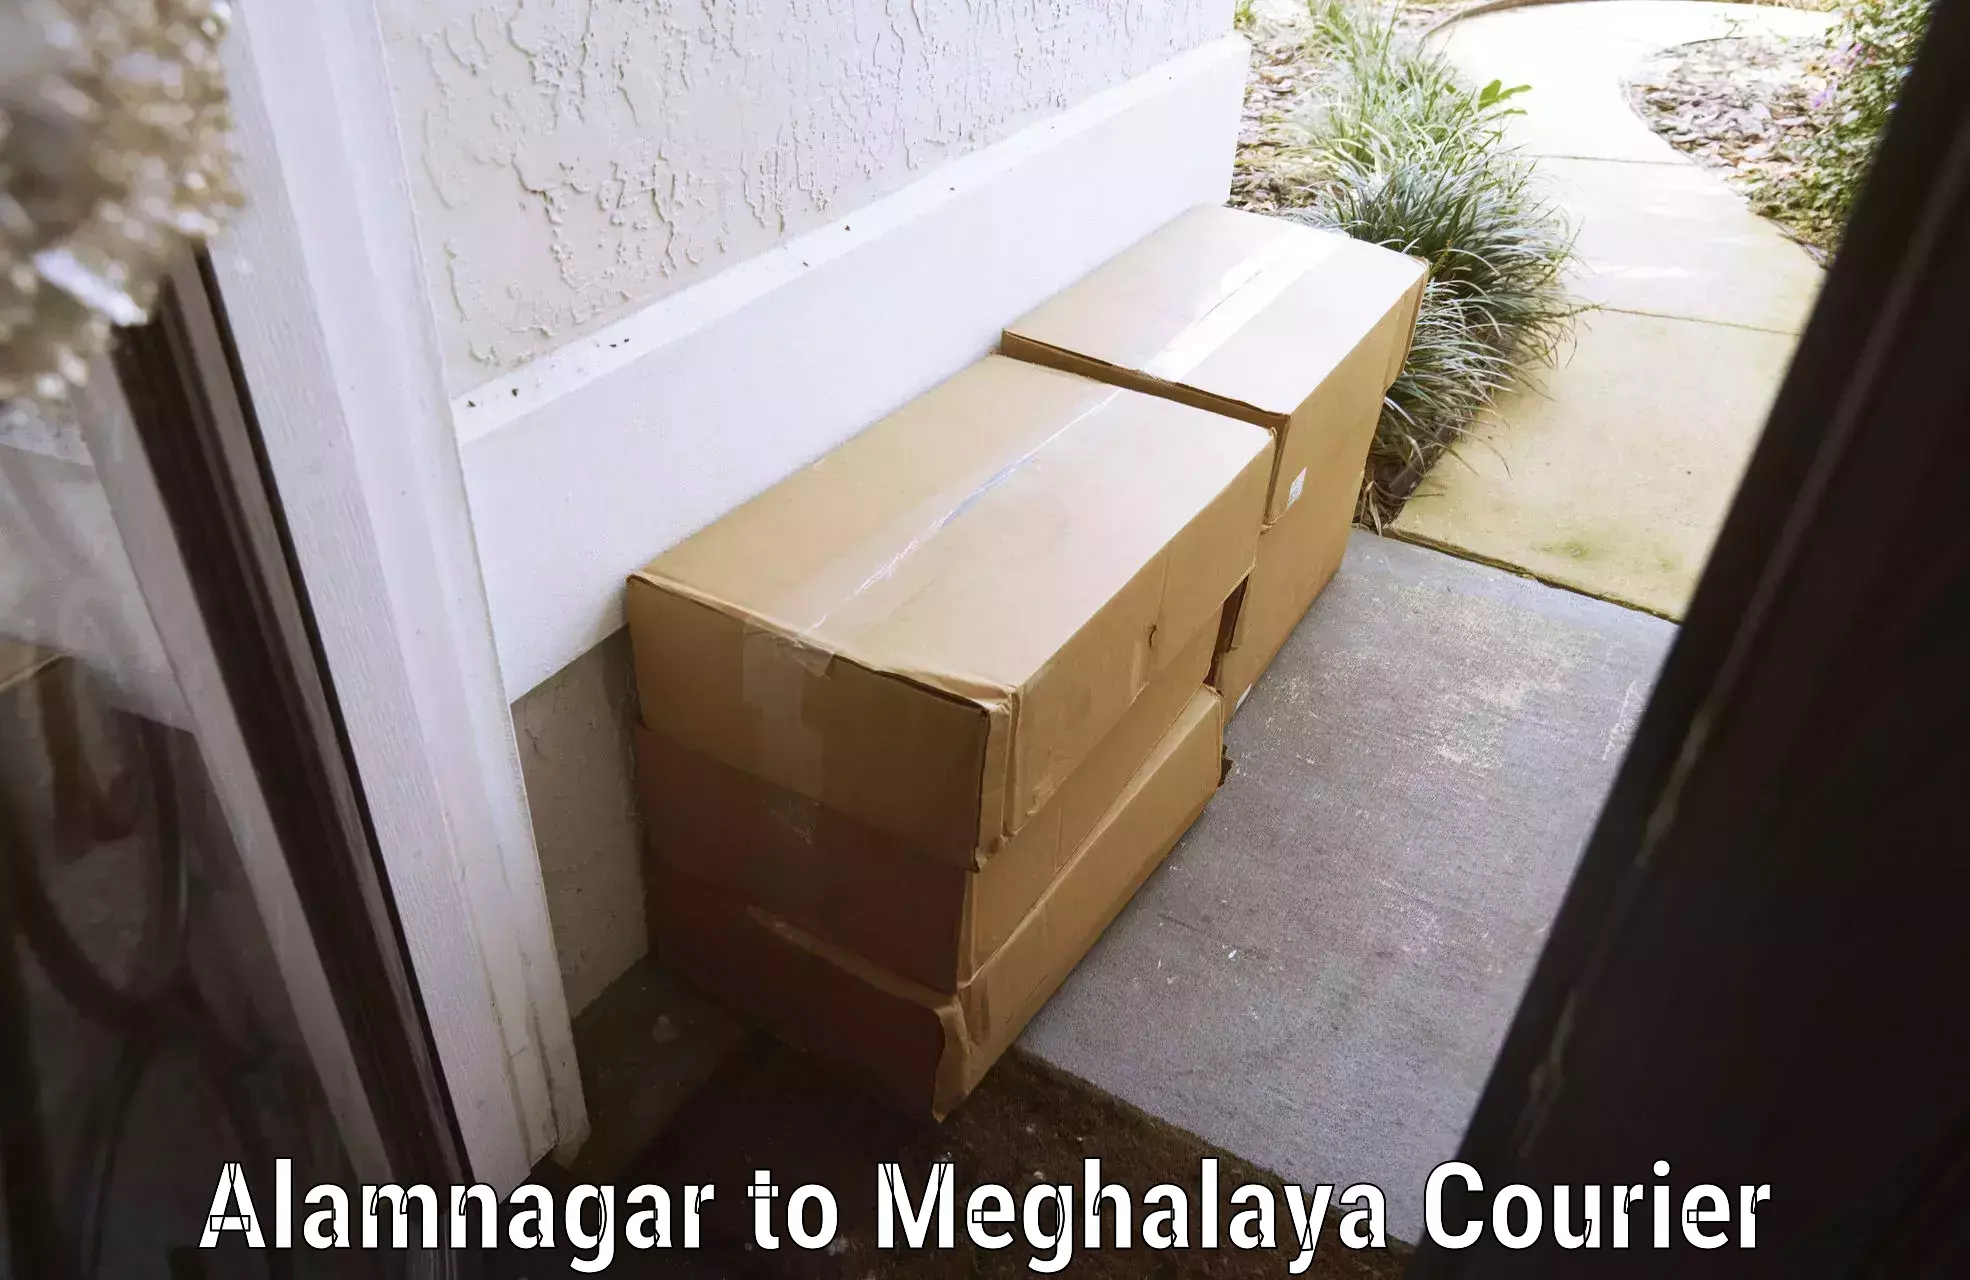 Baggage transport quote Alamnagar to Meghalaya